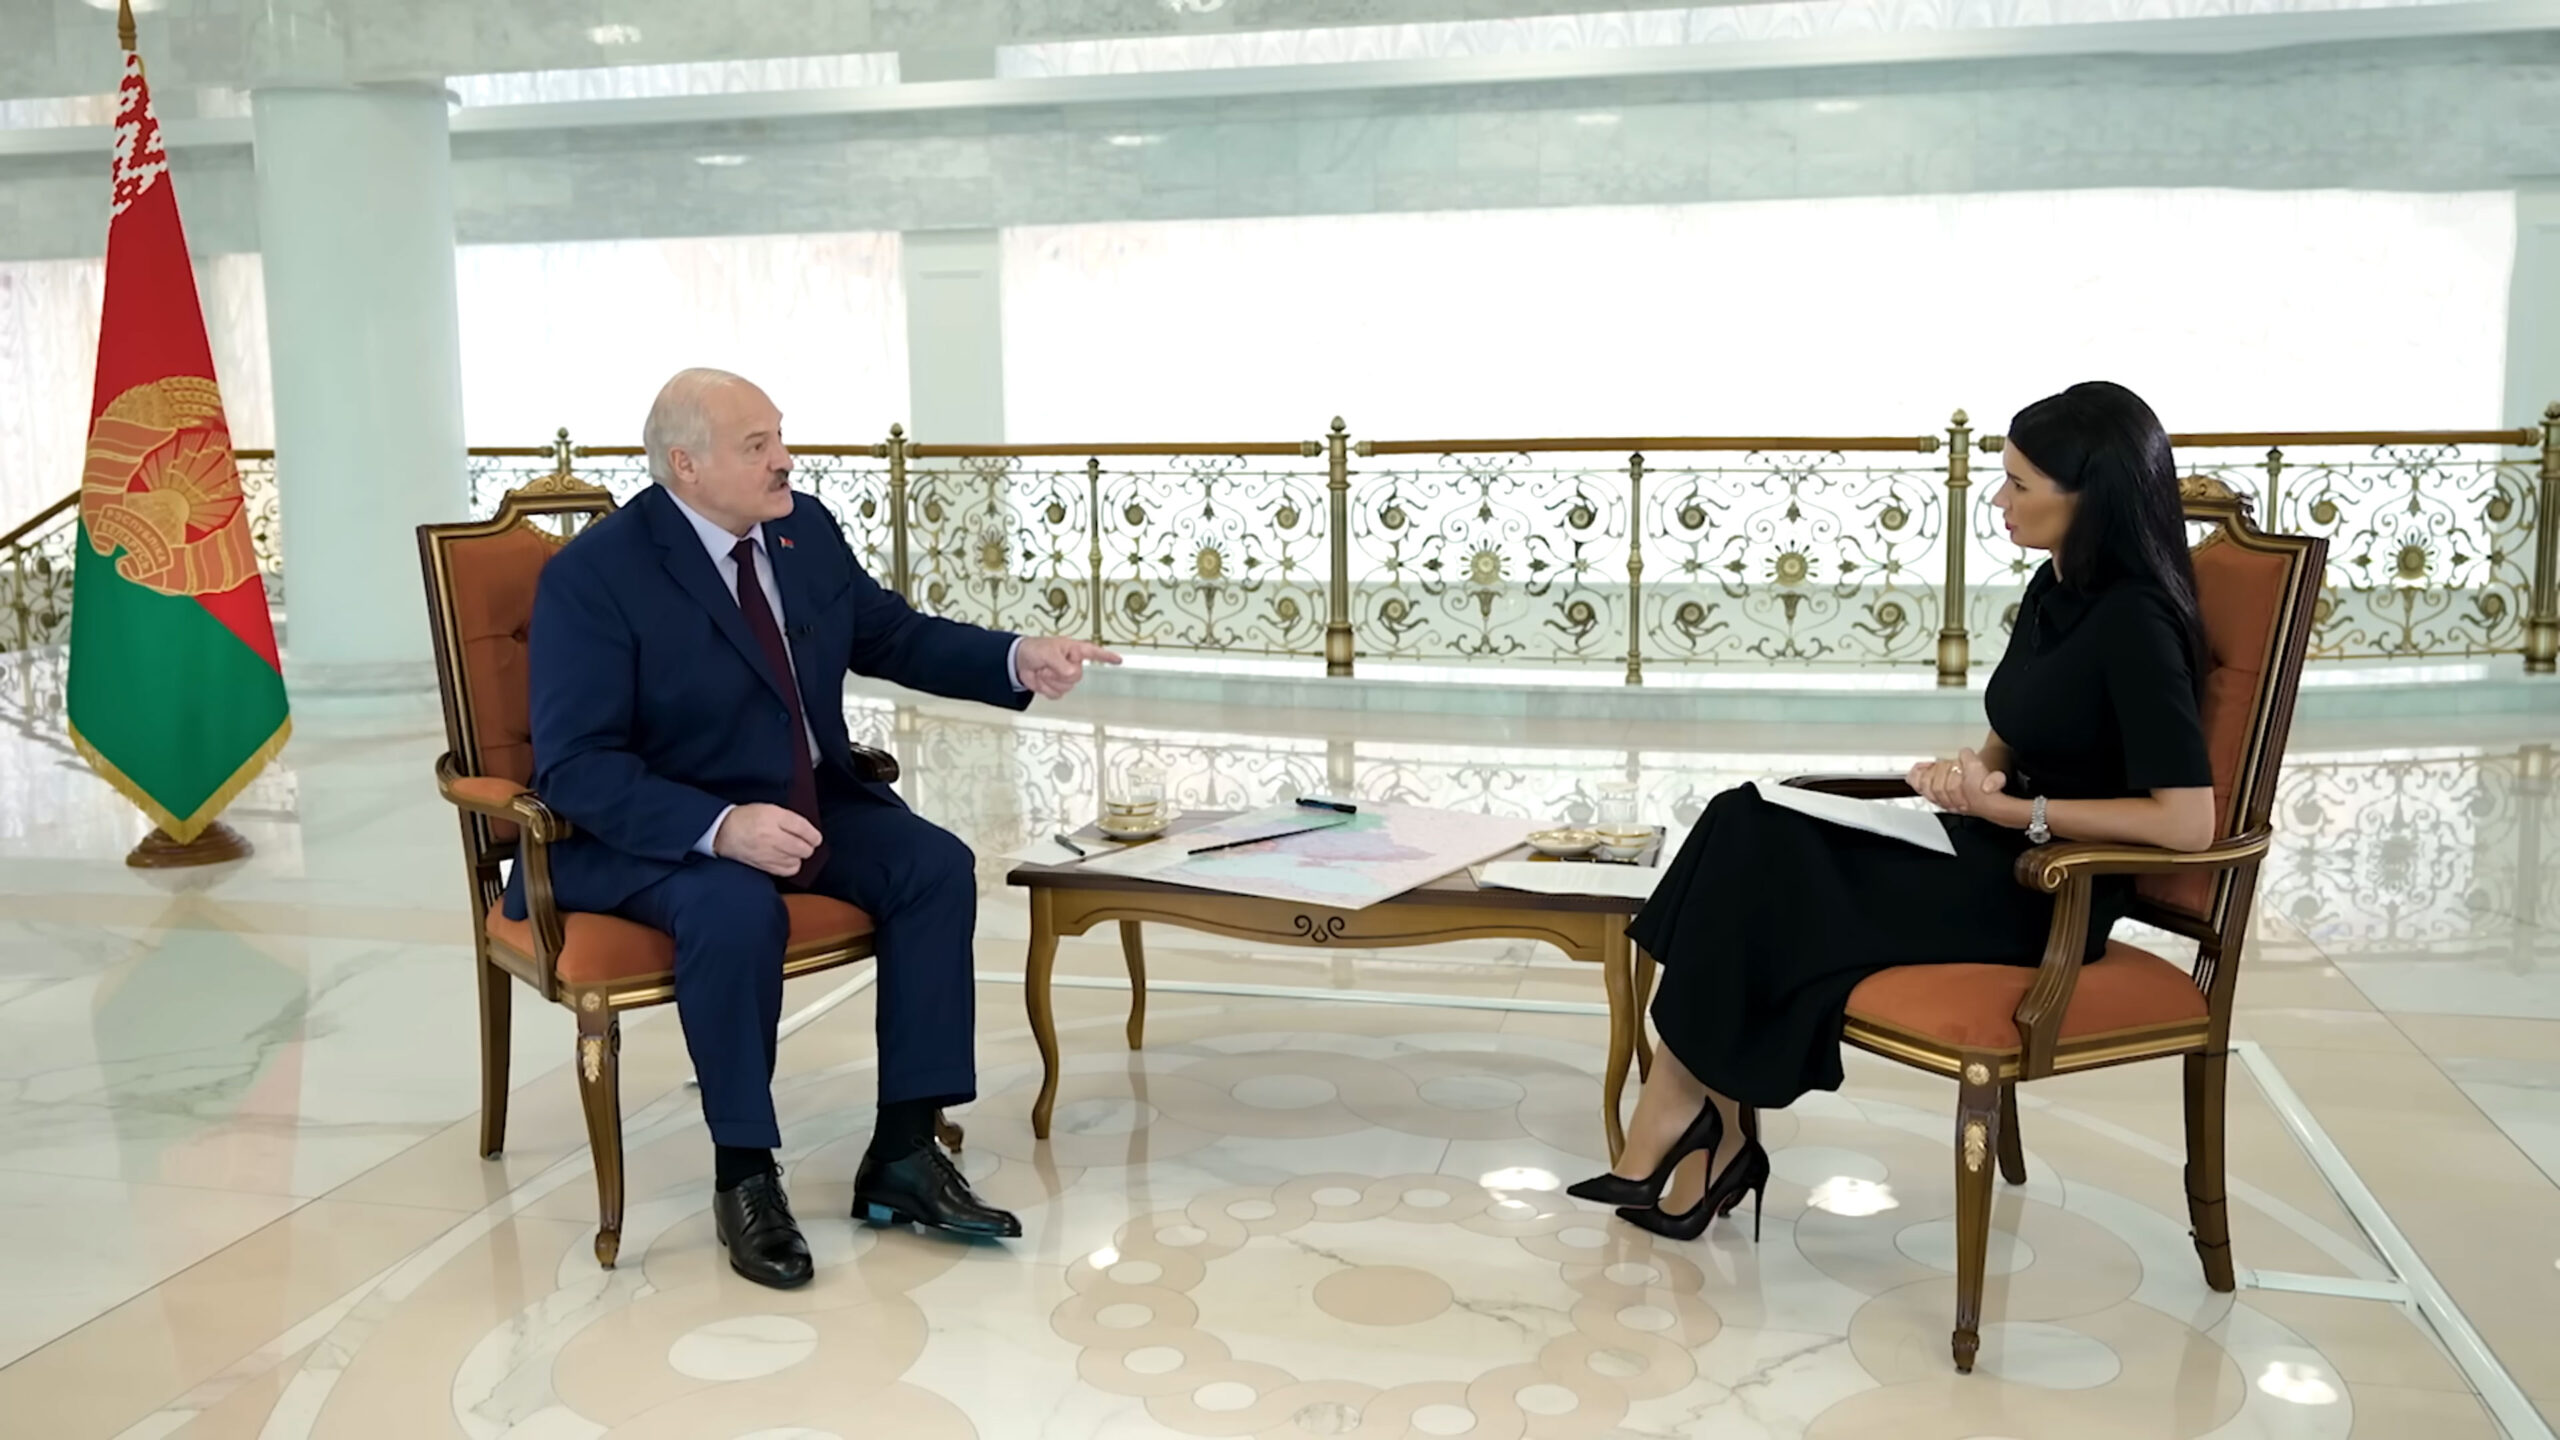 Панченко украинская журналистка. Интервью Лукашенко с украинской журналисткой.